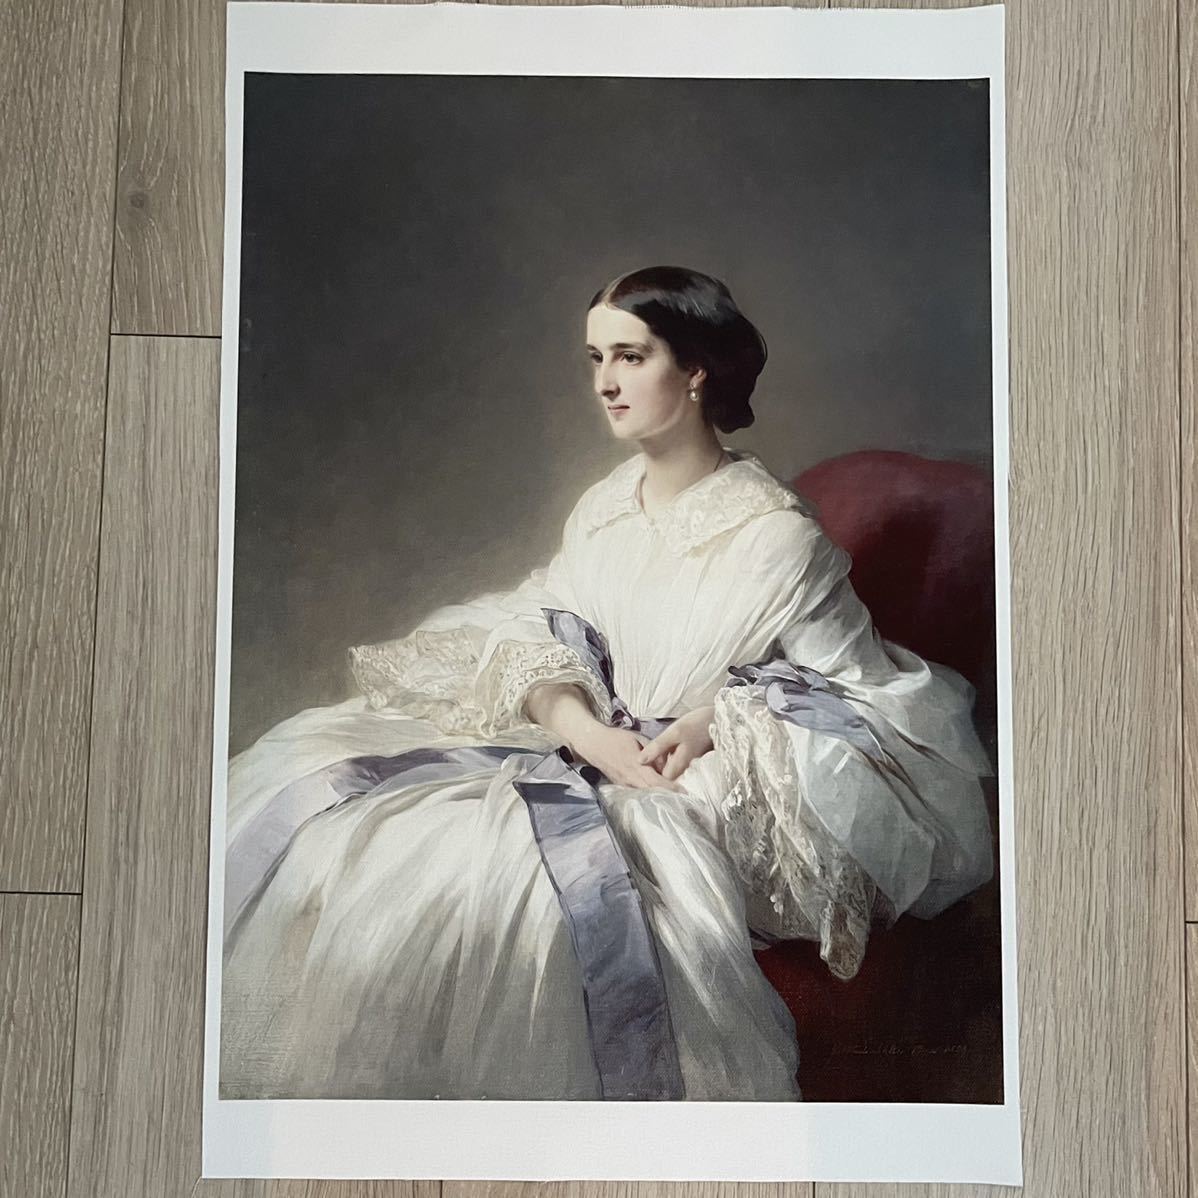 [Livraison gratuite] Comtesse Olga de Franz Winterhalter, impression sur toile, 307 x 413 cm, Peinture occidentale, peinture russe, portrait, Ouvrages d'art, Peinture, autres